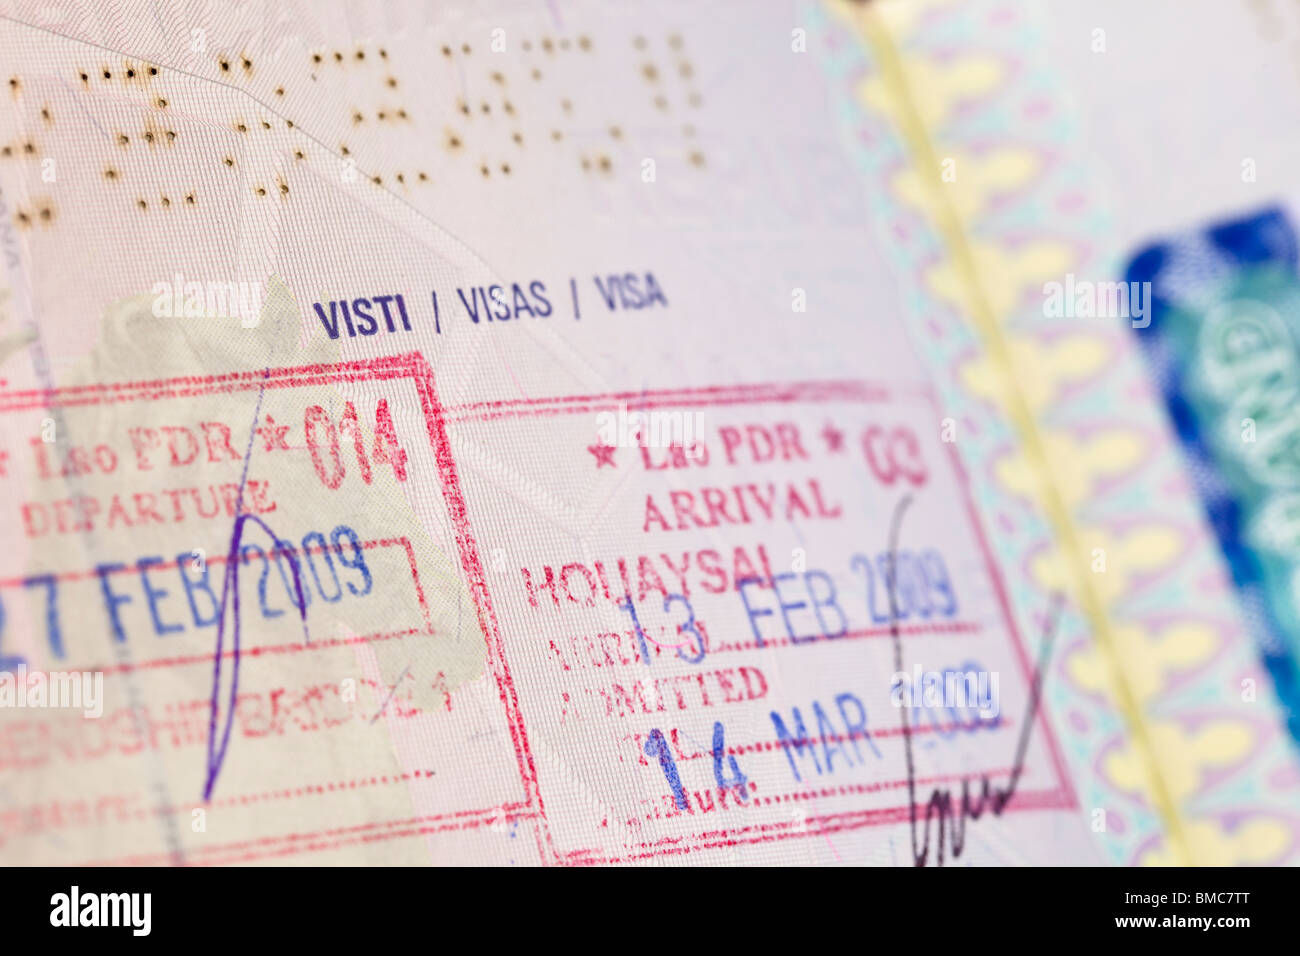 Une page du passeport avec visa stamps Banque D'Images